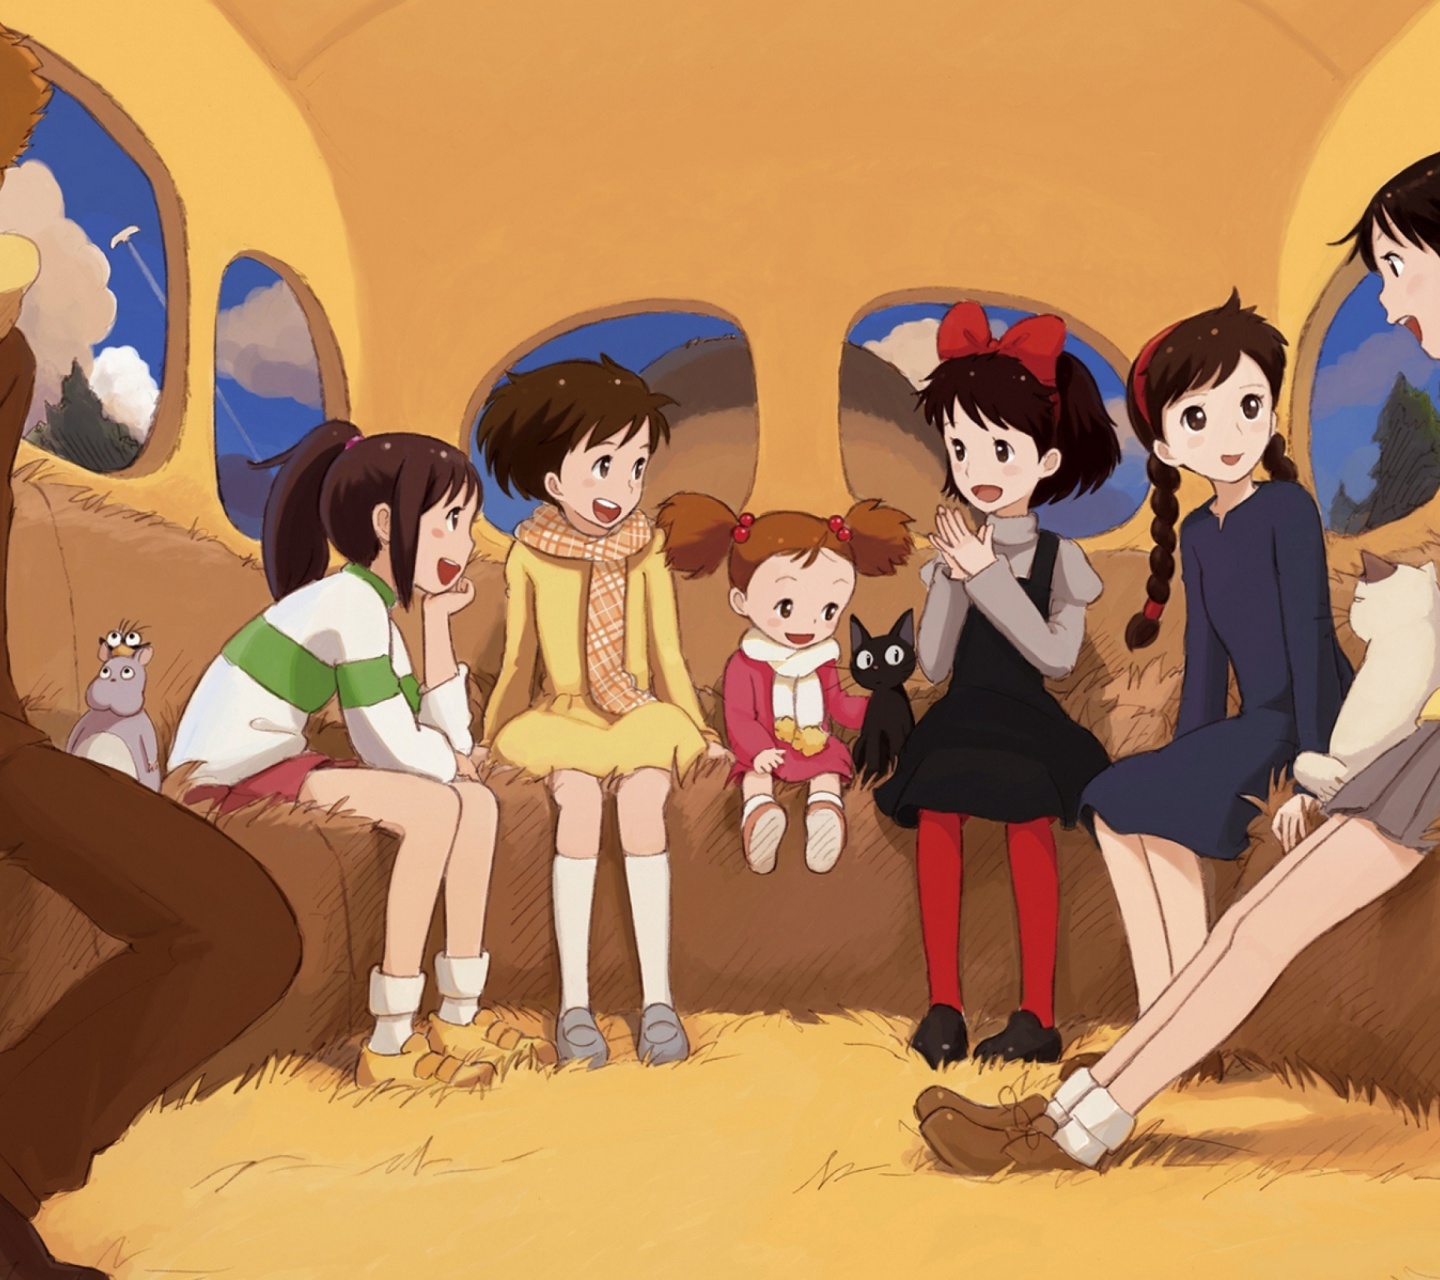 Kikis Delivery Service with Kiki, Jiji, Osono and Ursula screenshot #1 1440x1280